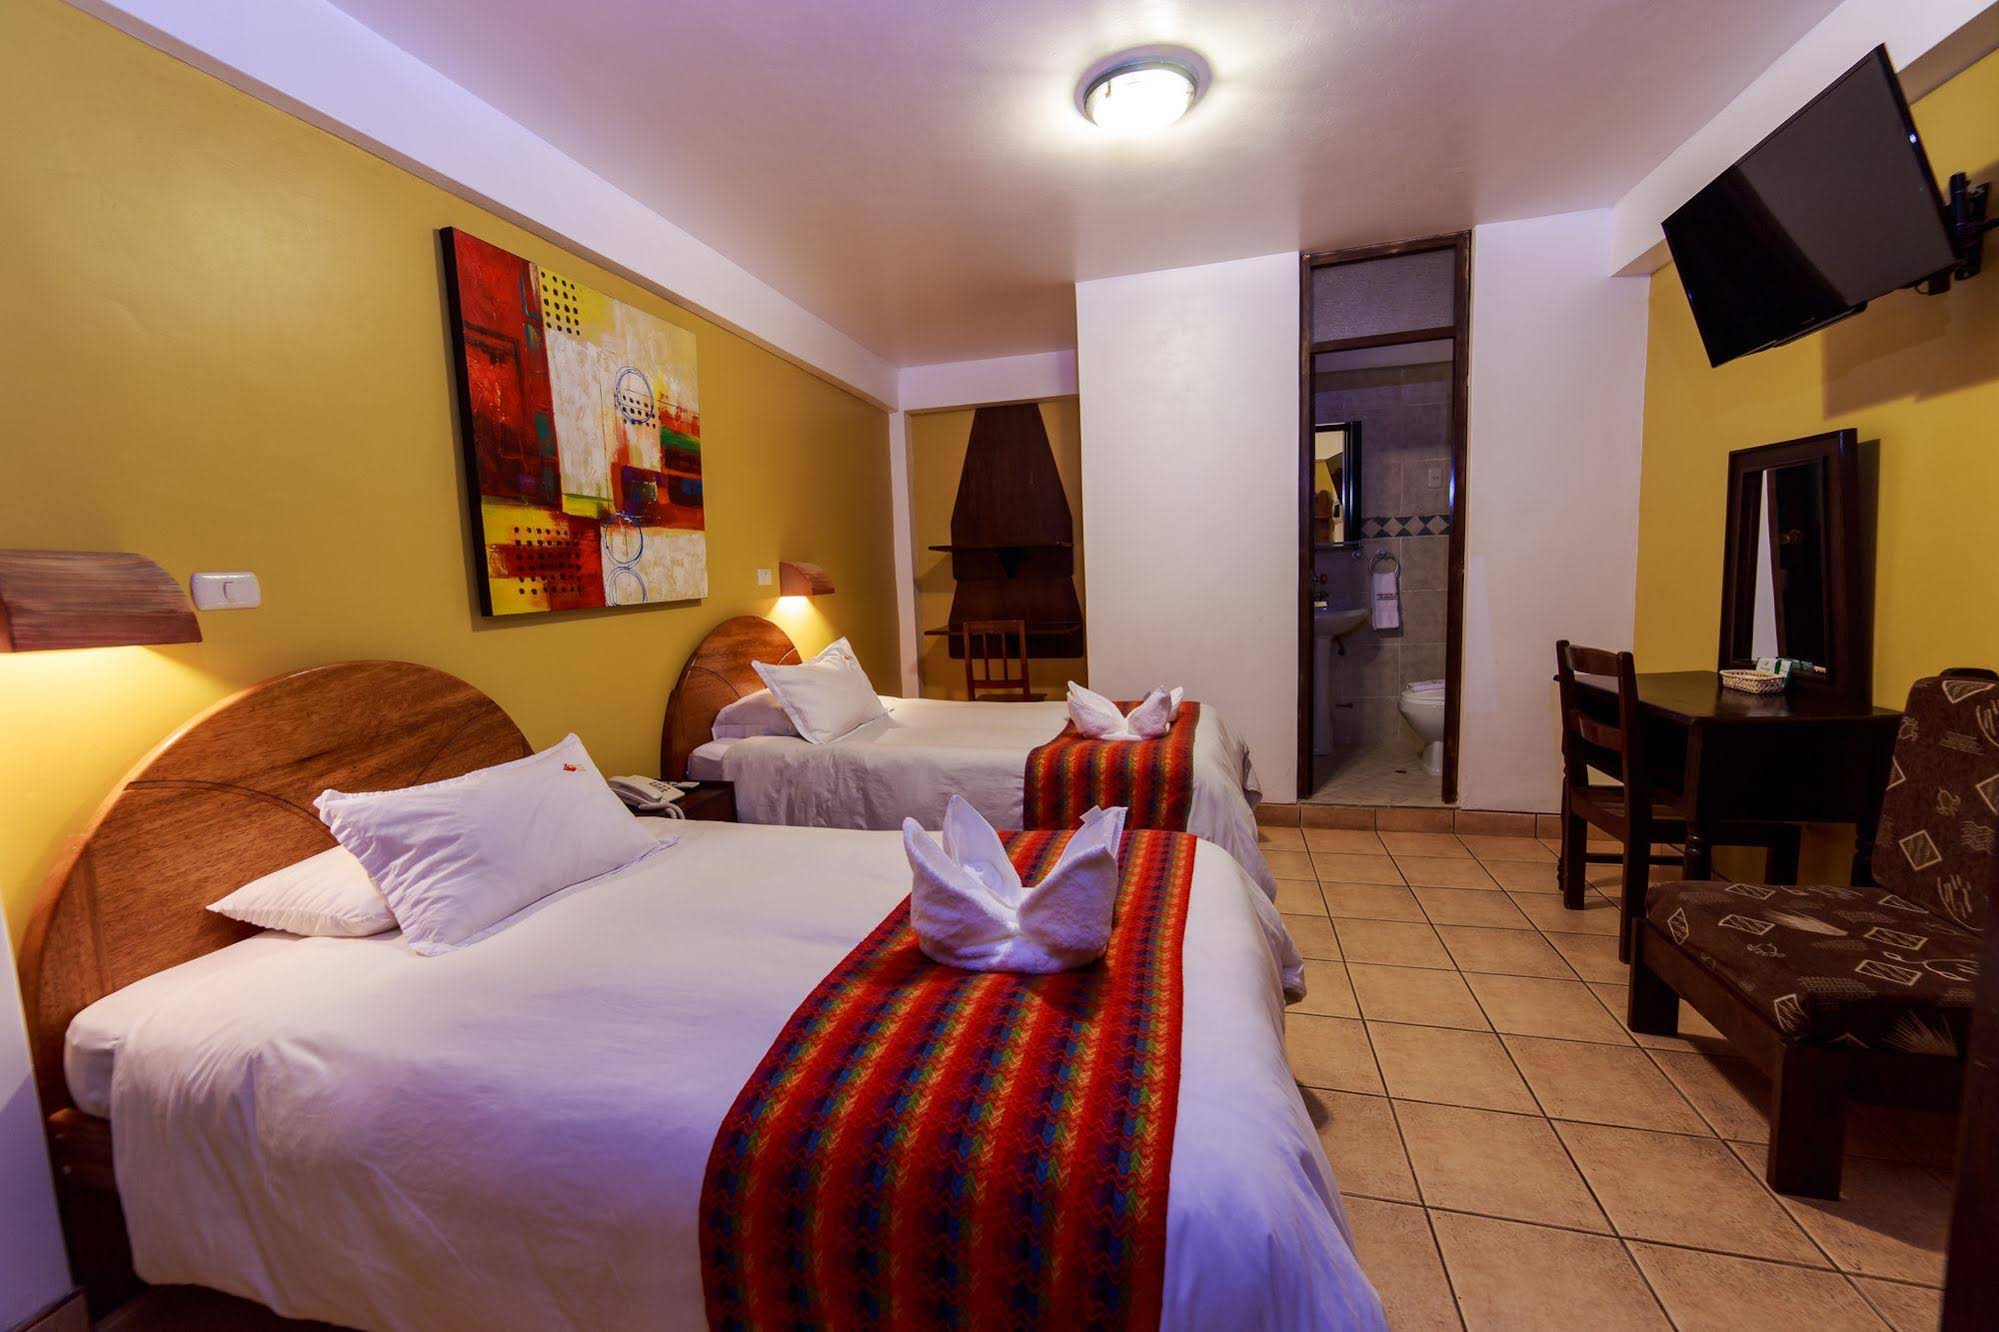 Terrazas Del Inca Bed and Breakfast Hostel